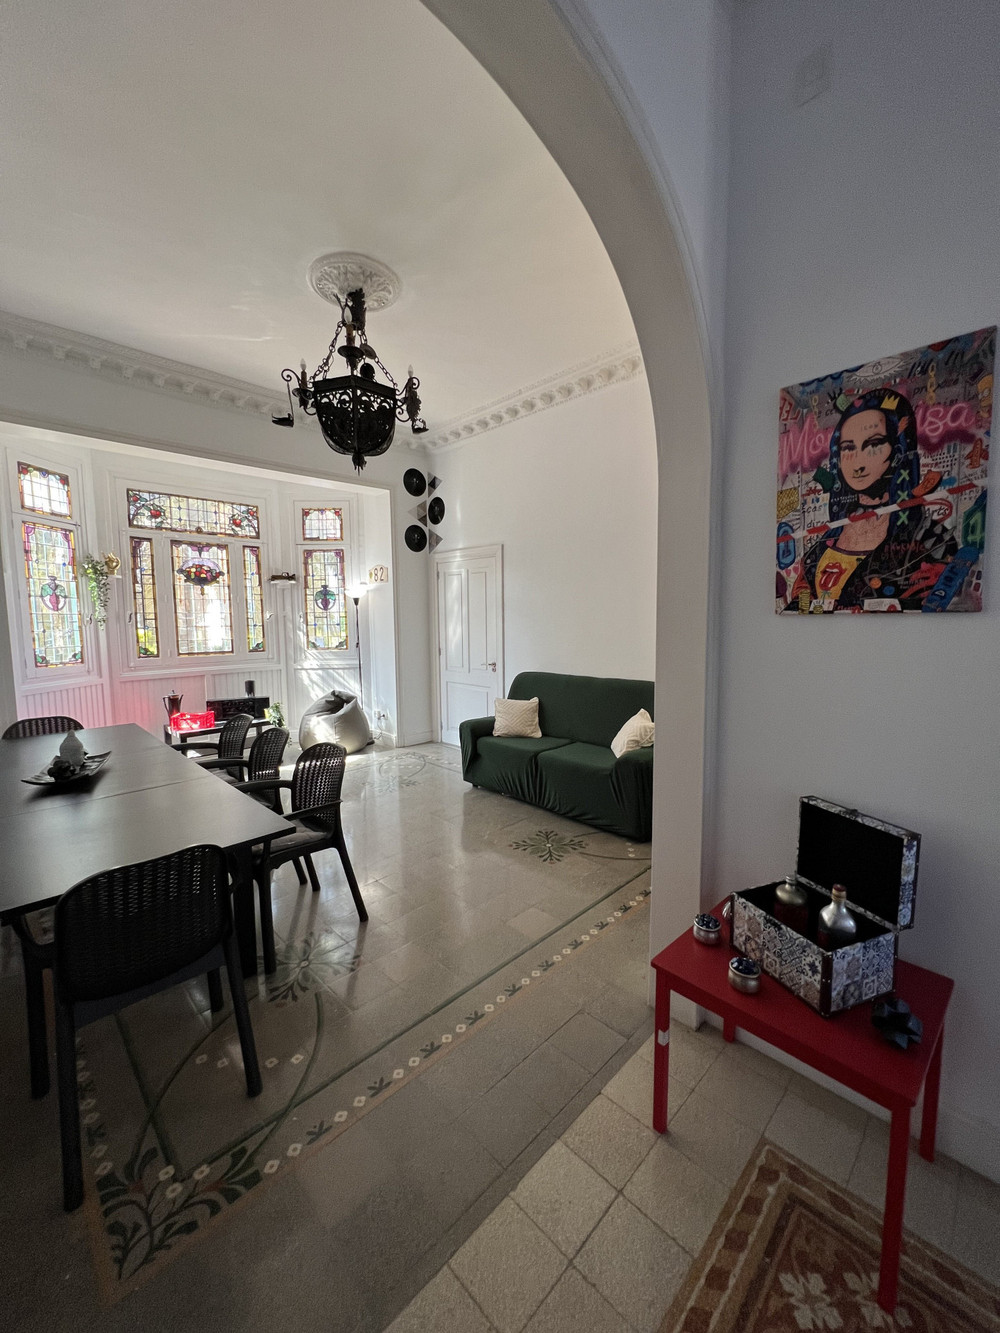 Private room in Co-Living Villa (Porto Alegre)